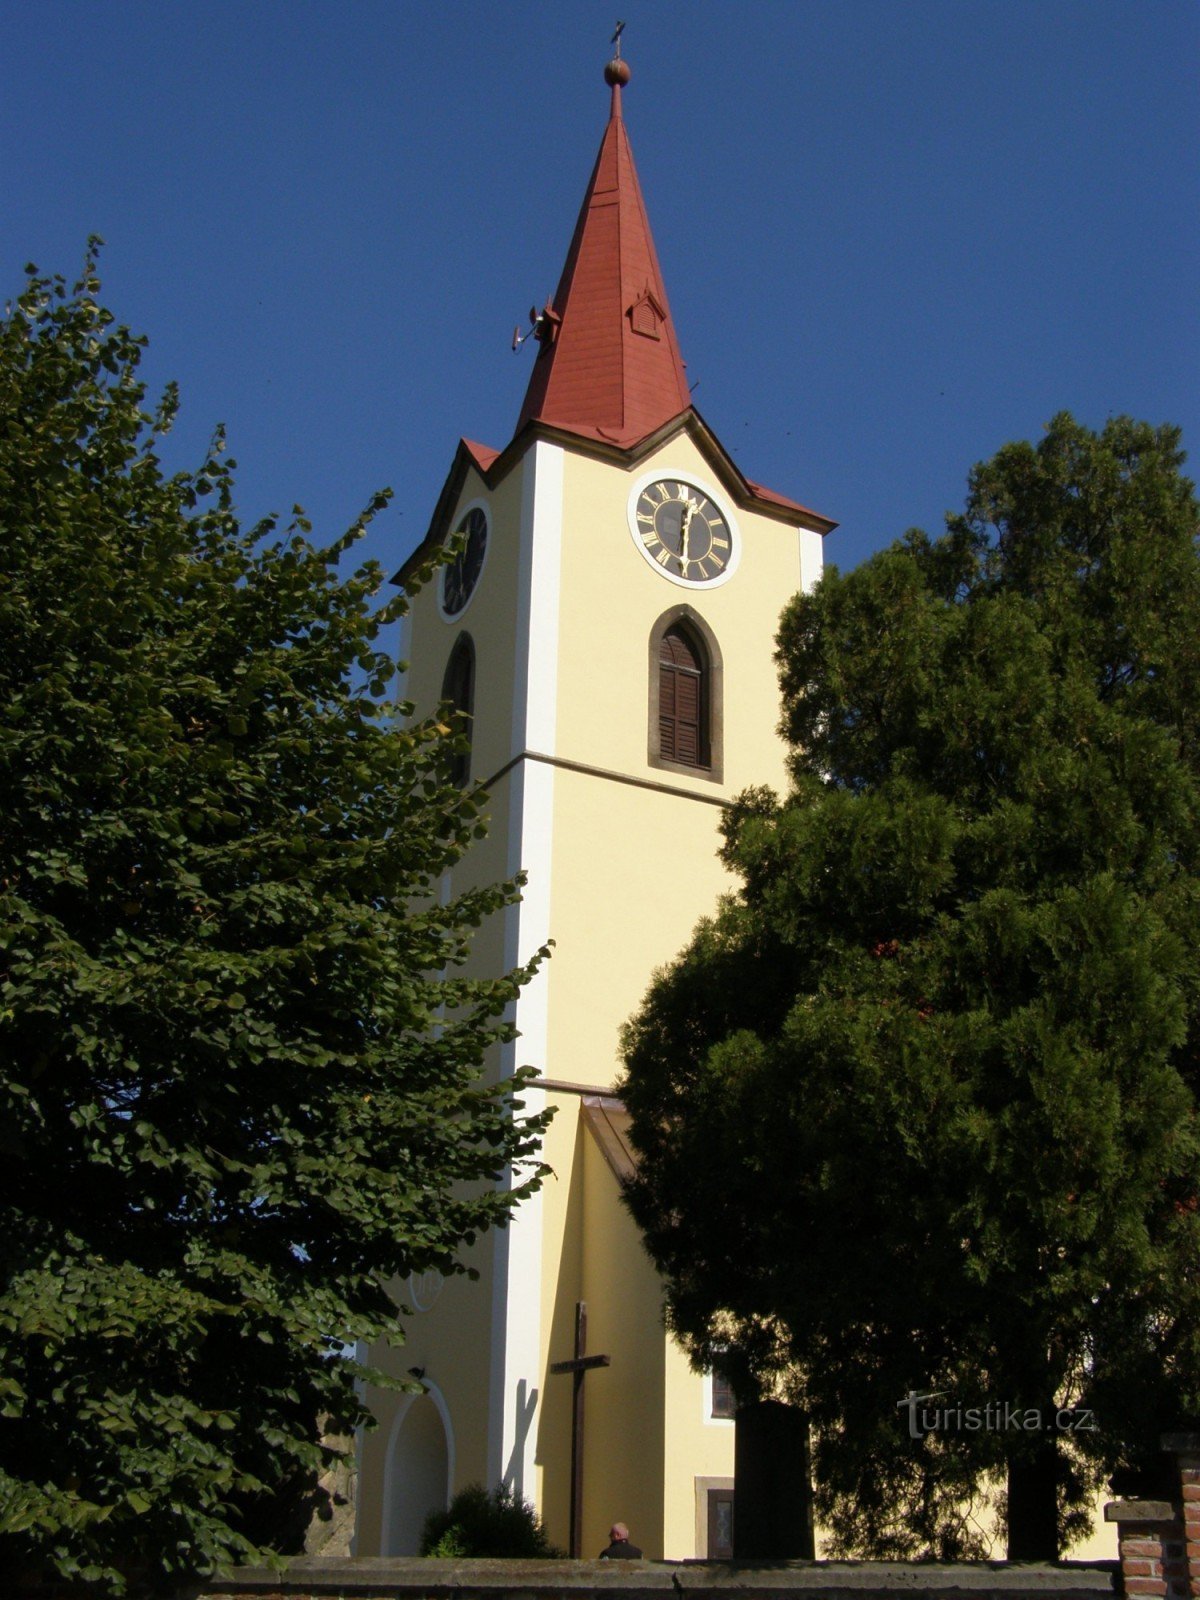 Jasenná - Iglesia de San Jorge